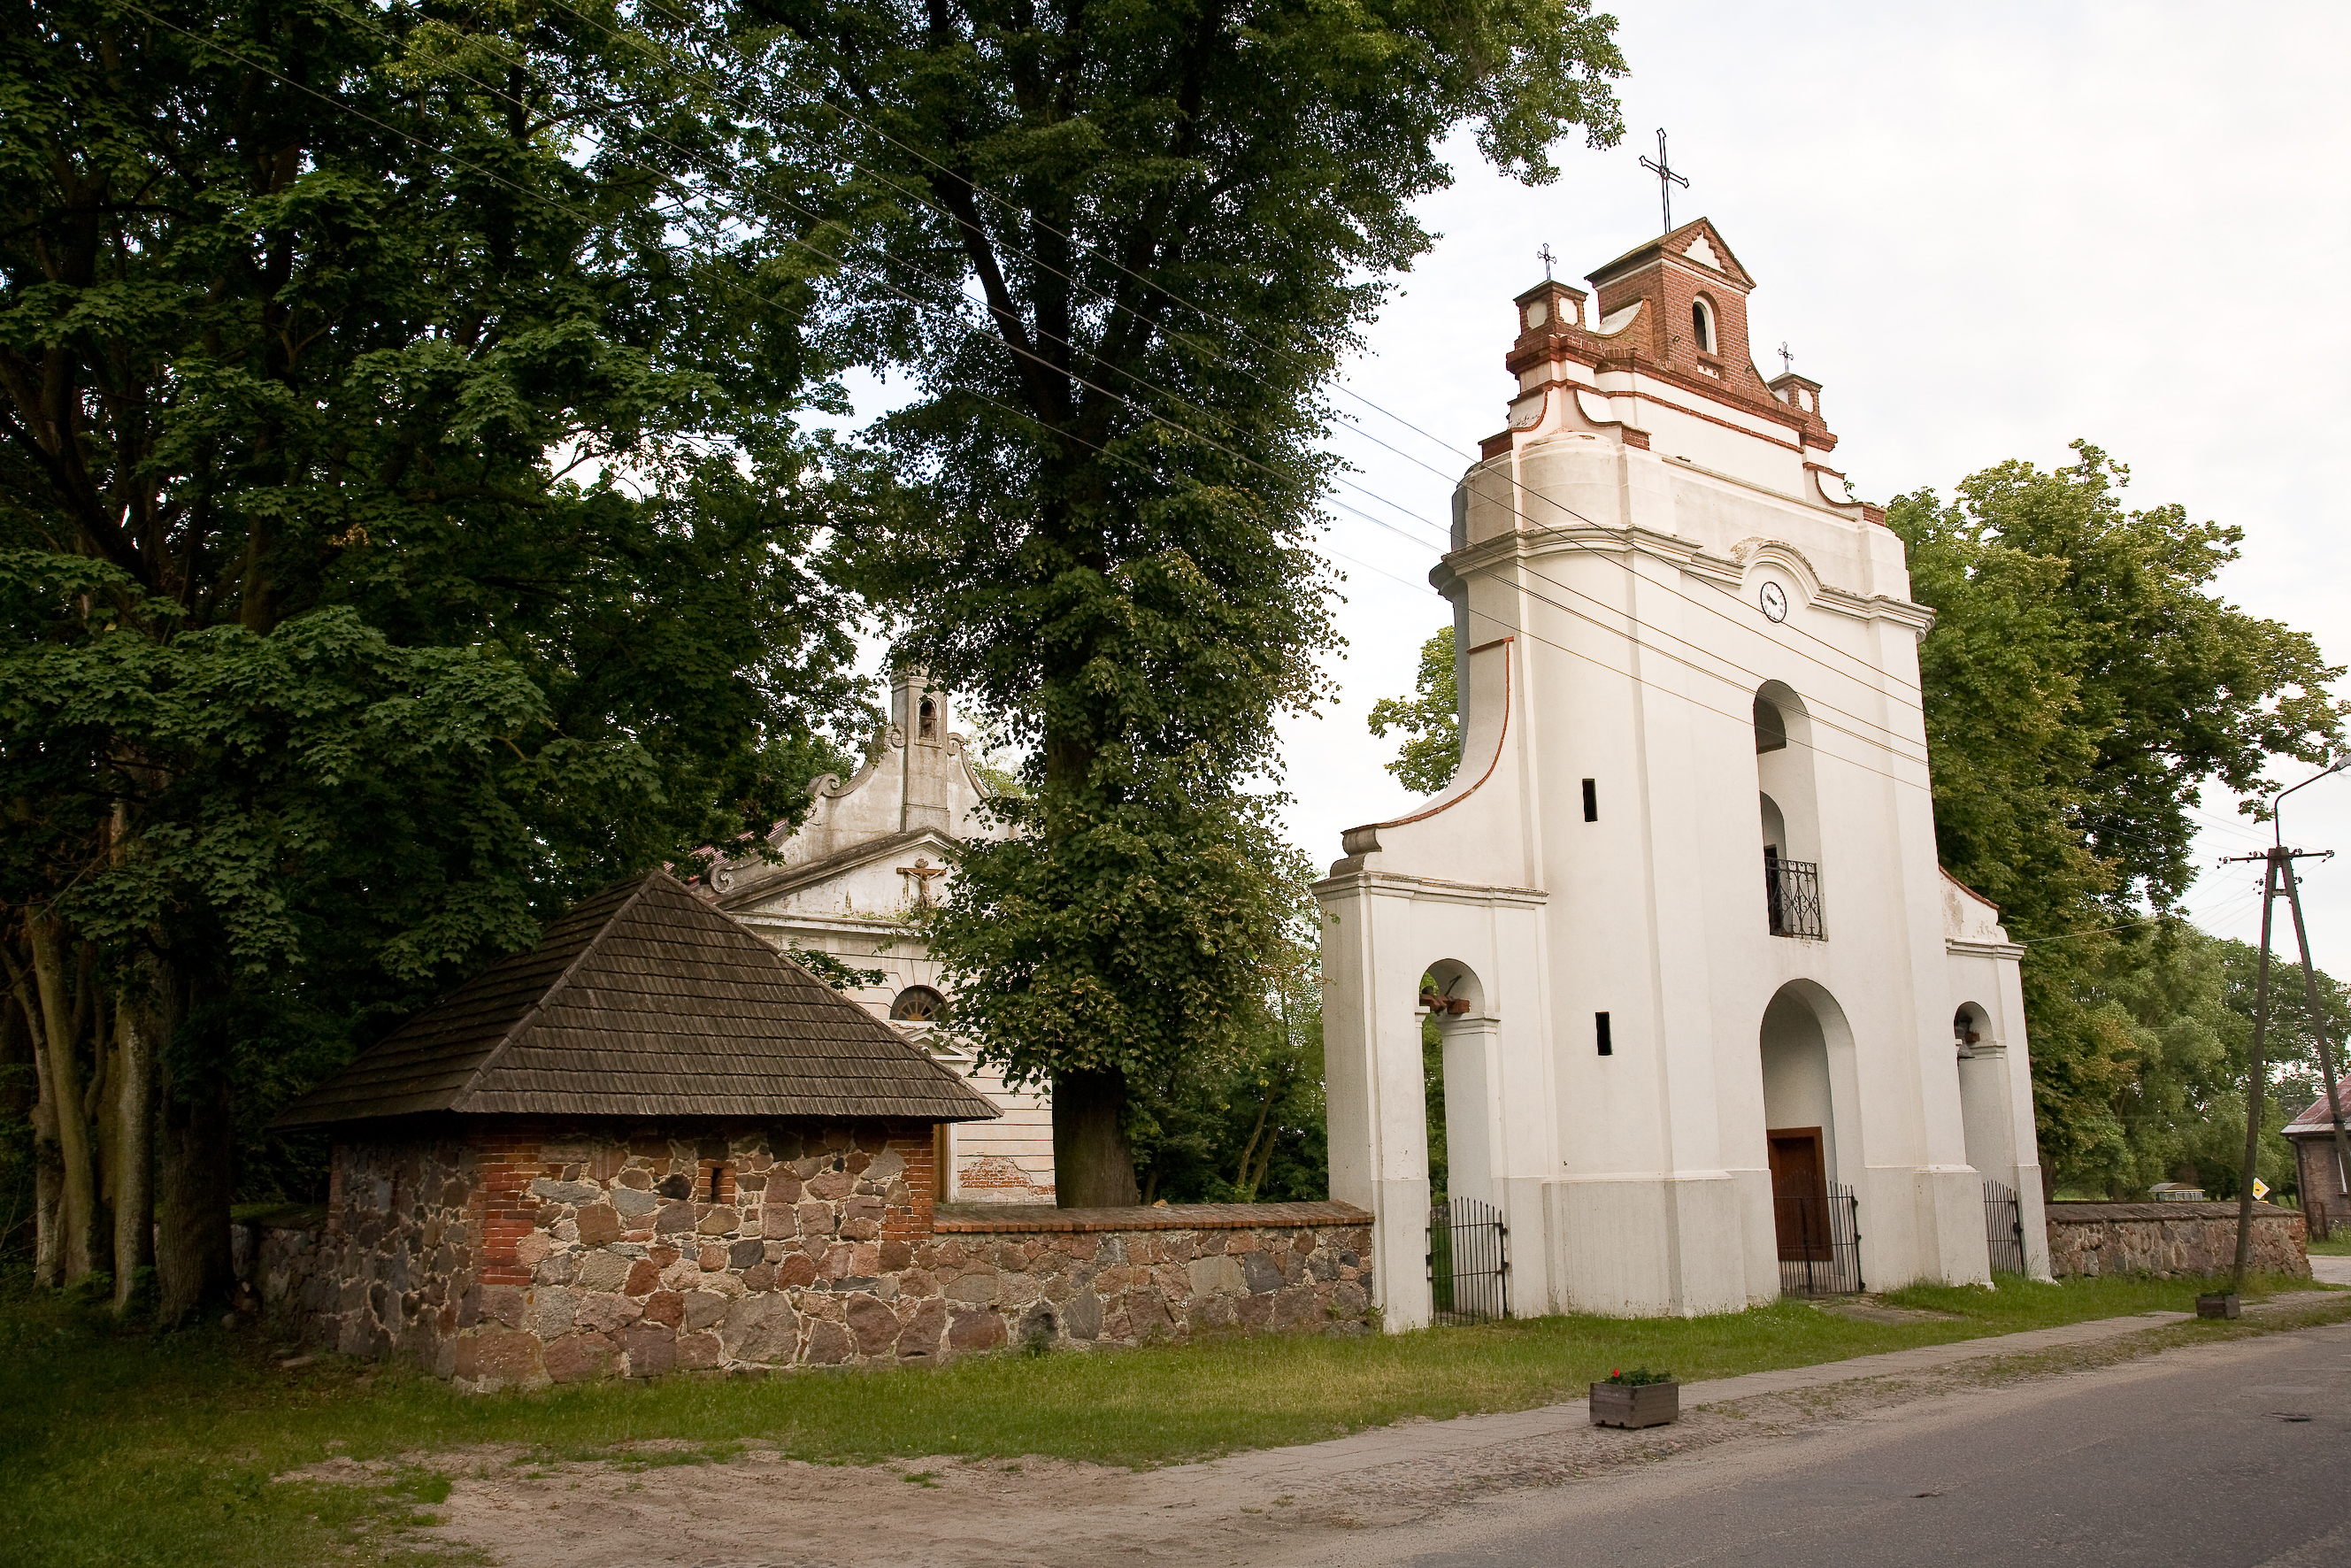 Kościół murowany z 1831 roku z odrestaurowaną dzwonnicą - bramą z 1715 roku w Borowiu.